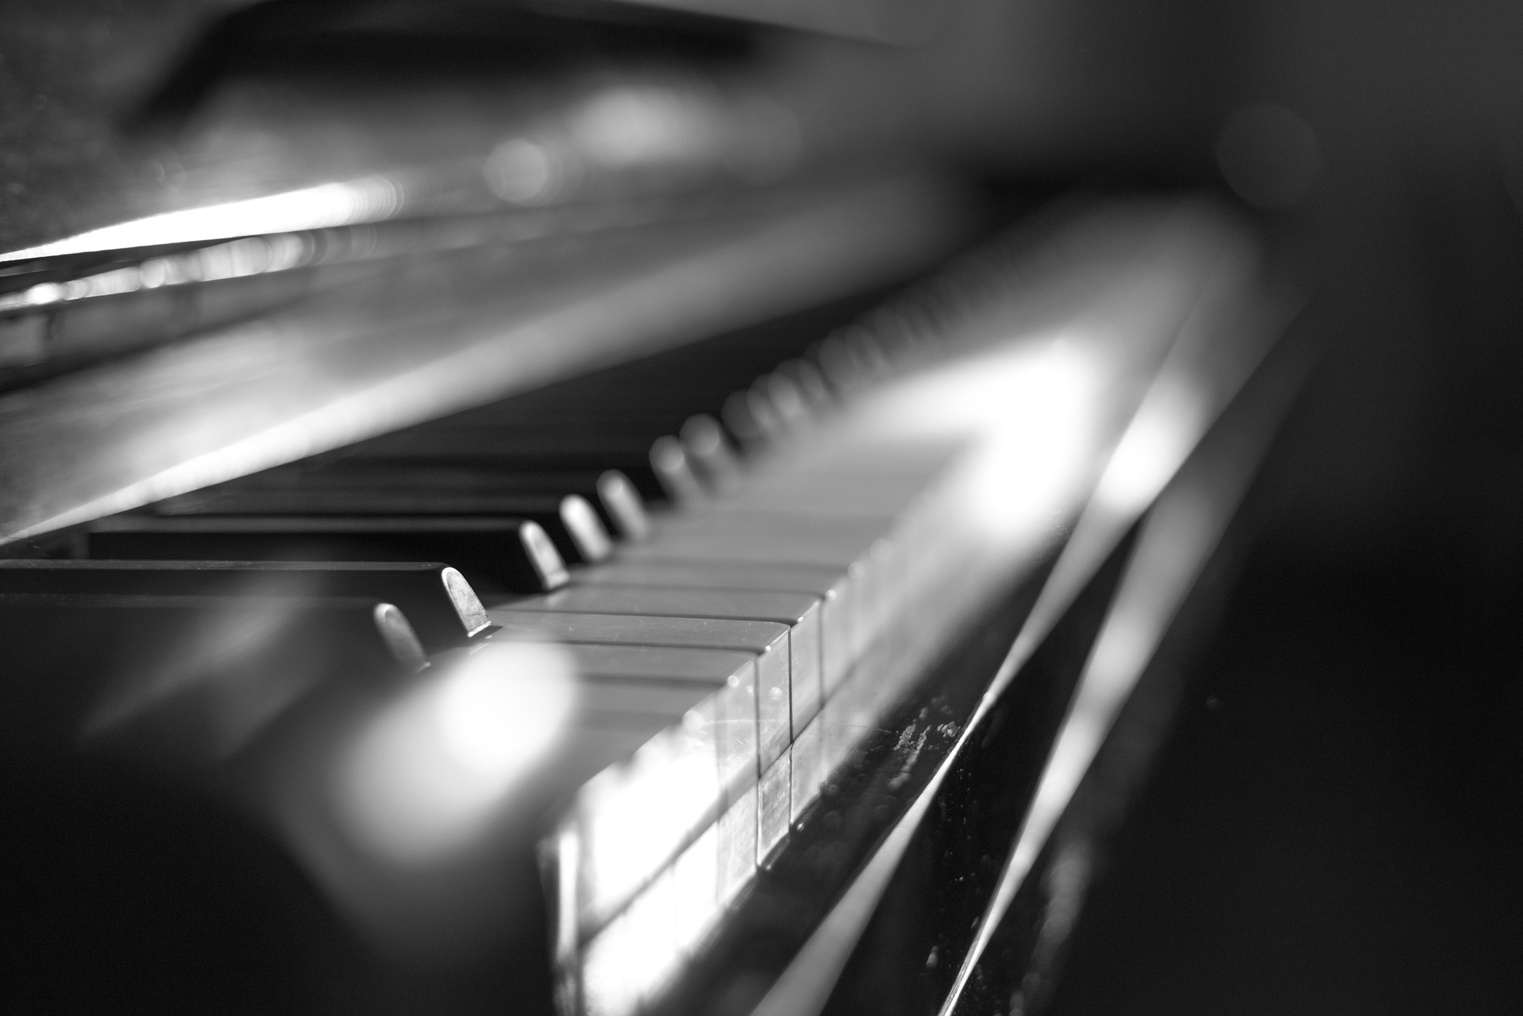 Piano, piano keys